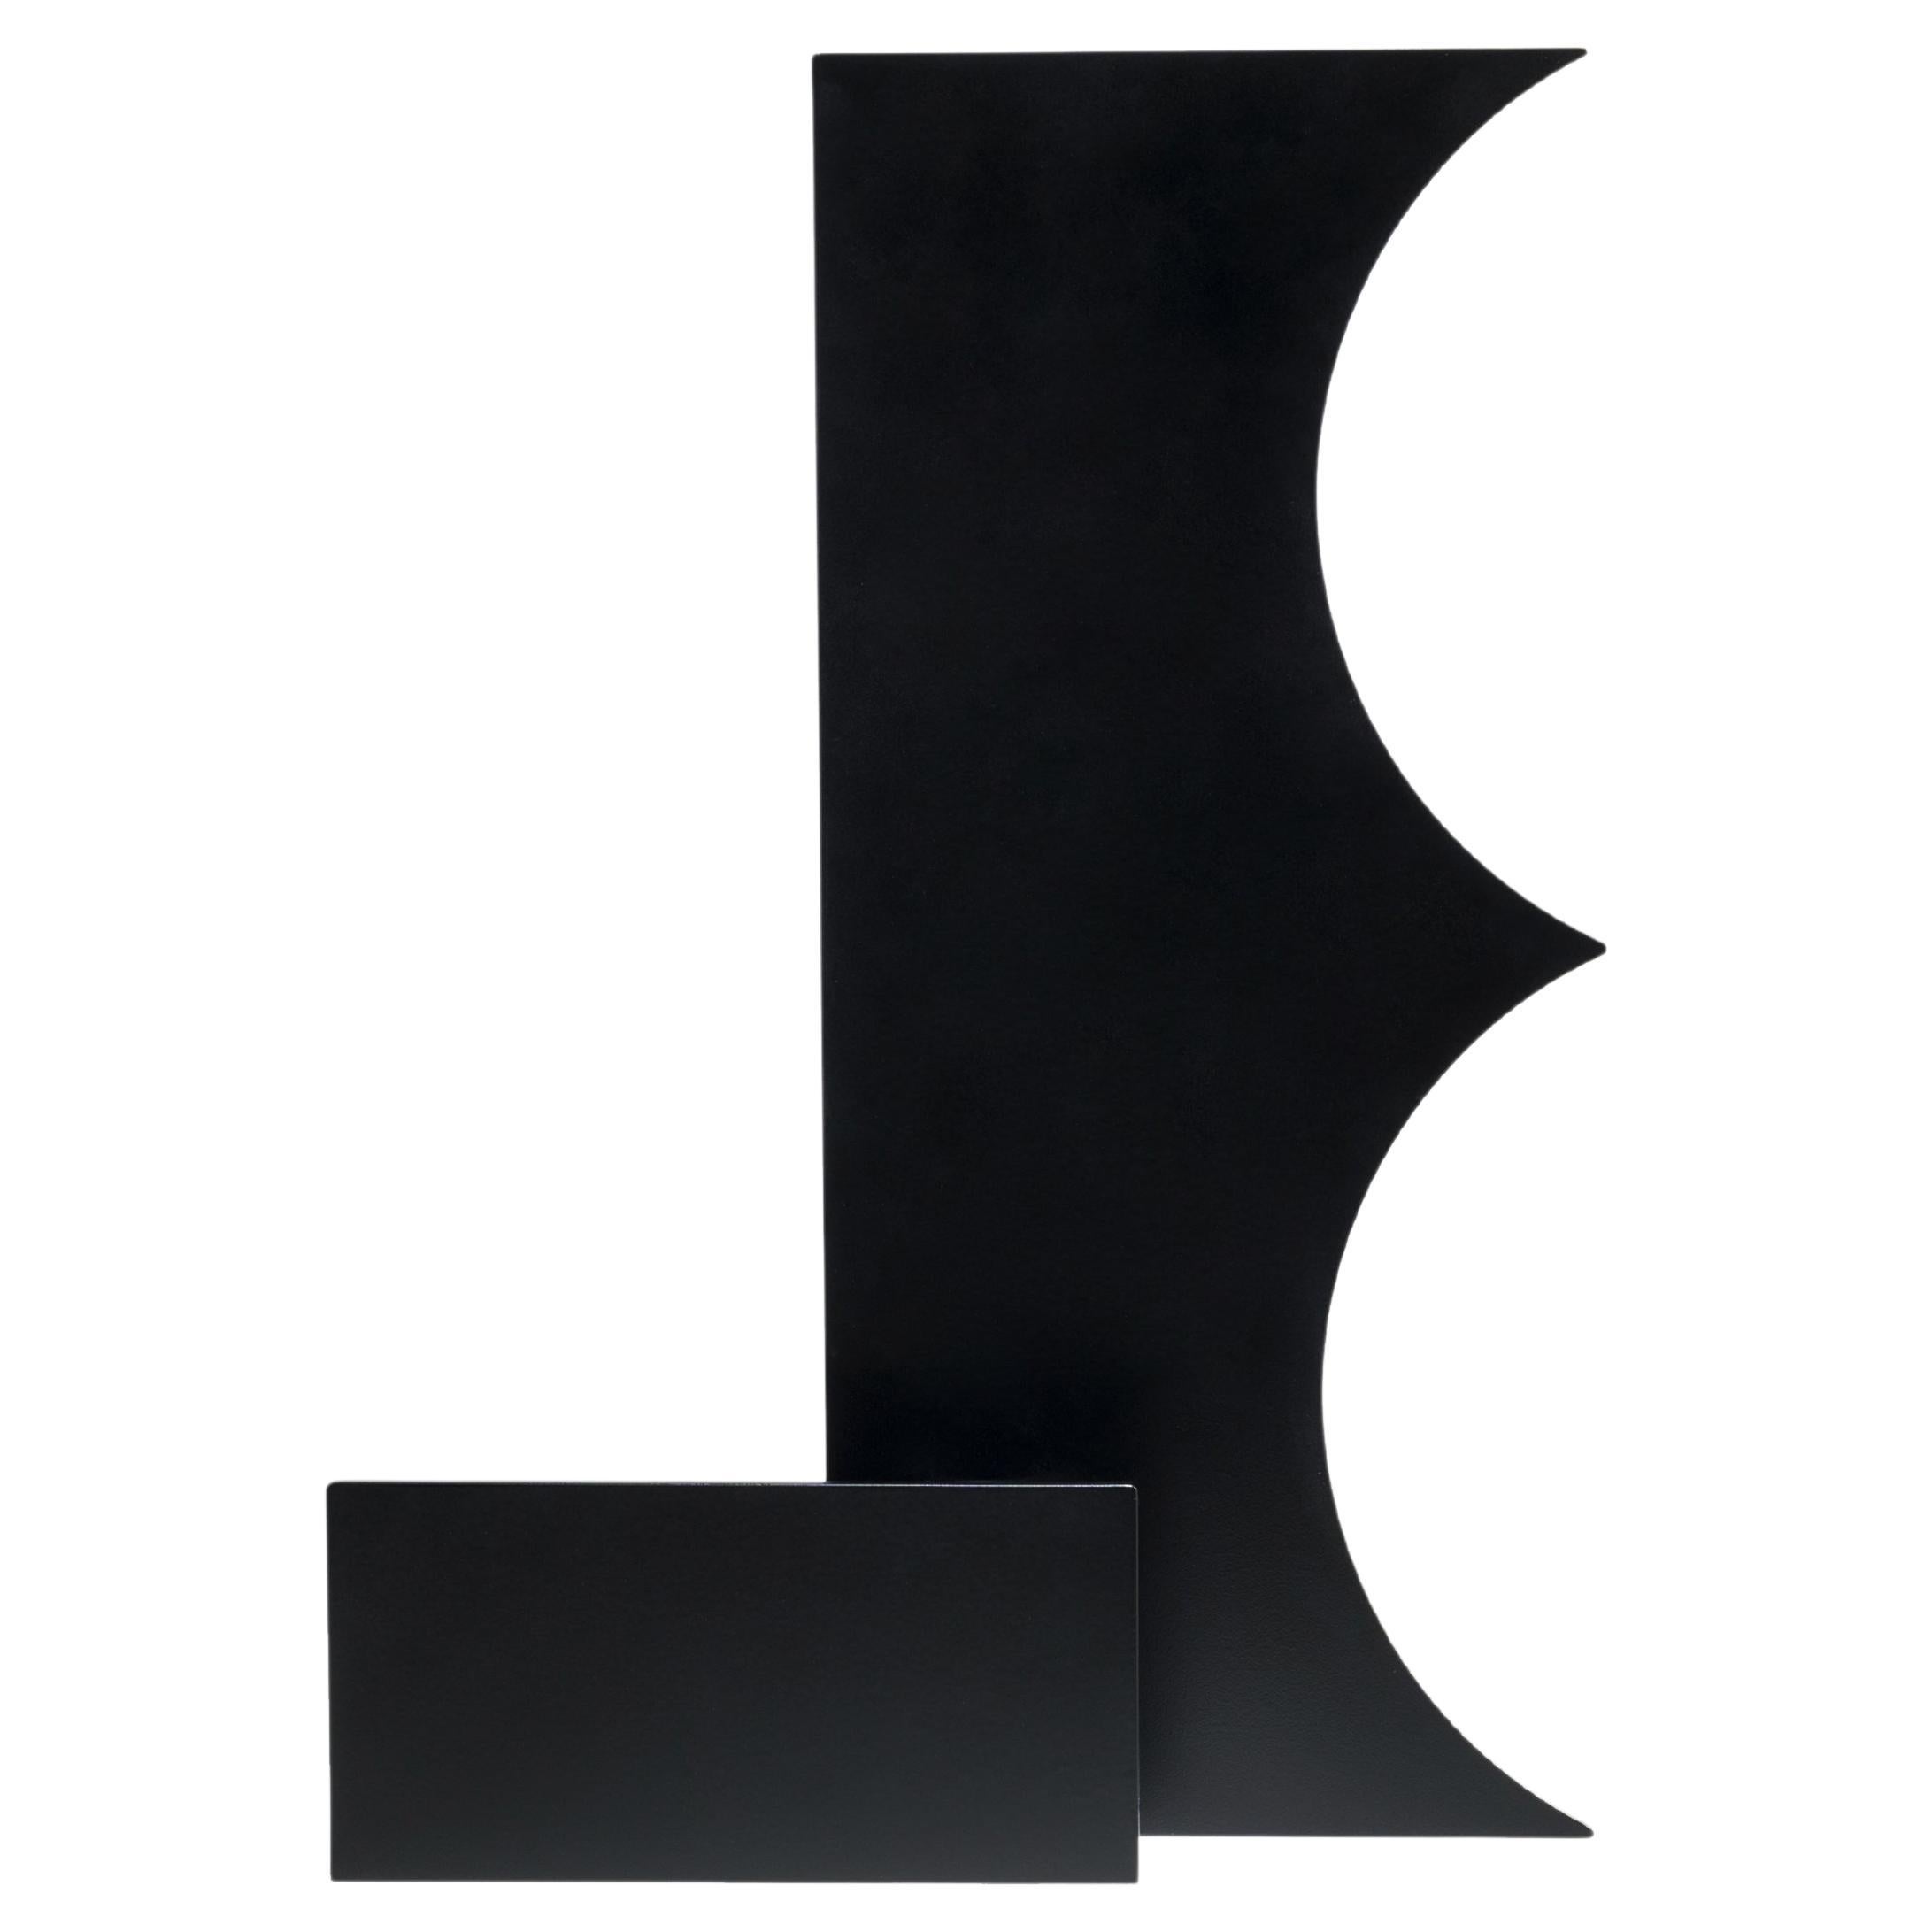 Cutout V05 - Vase sculptural contemporain en métal noir par Millim Studio